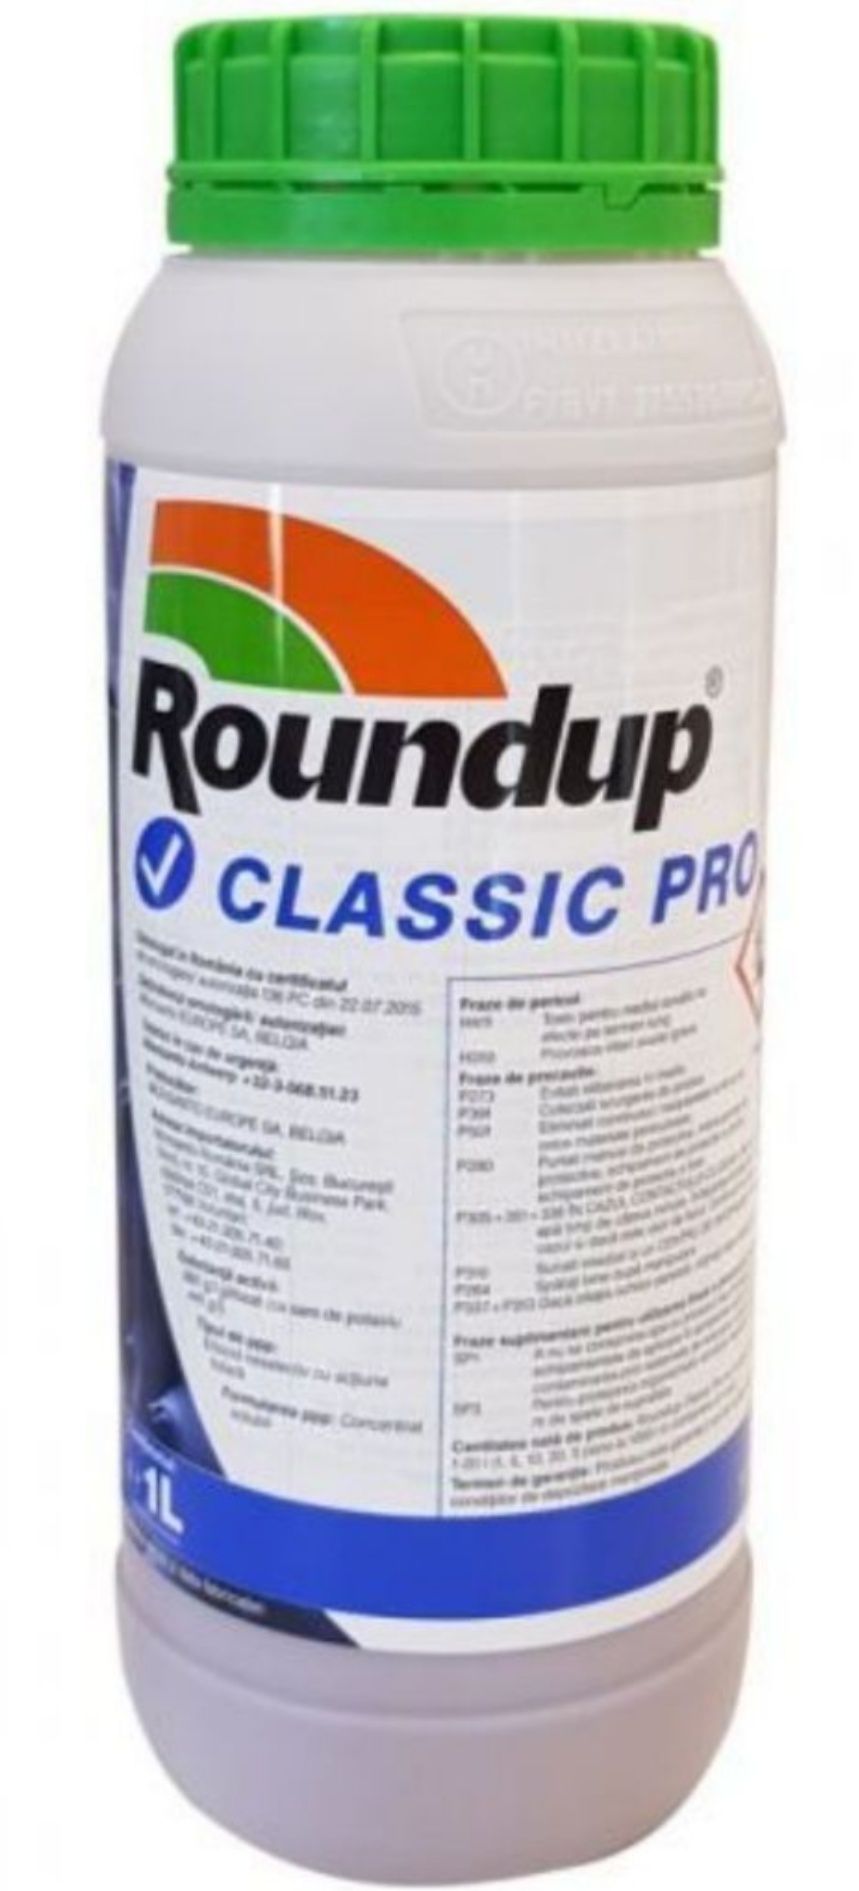 Roundup erbicid sigilat nefolosit